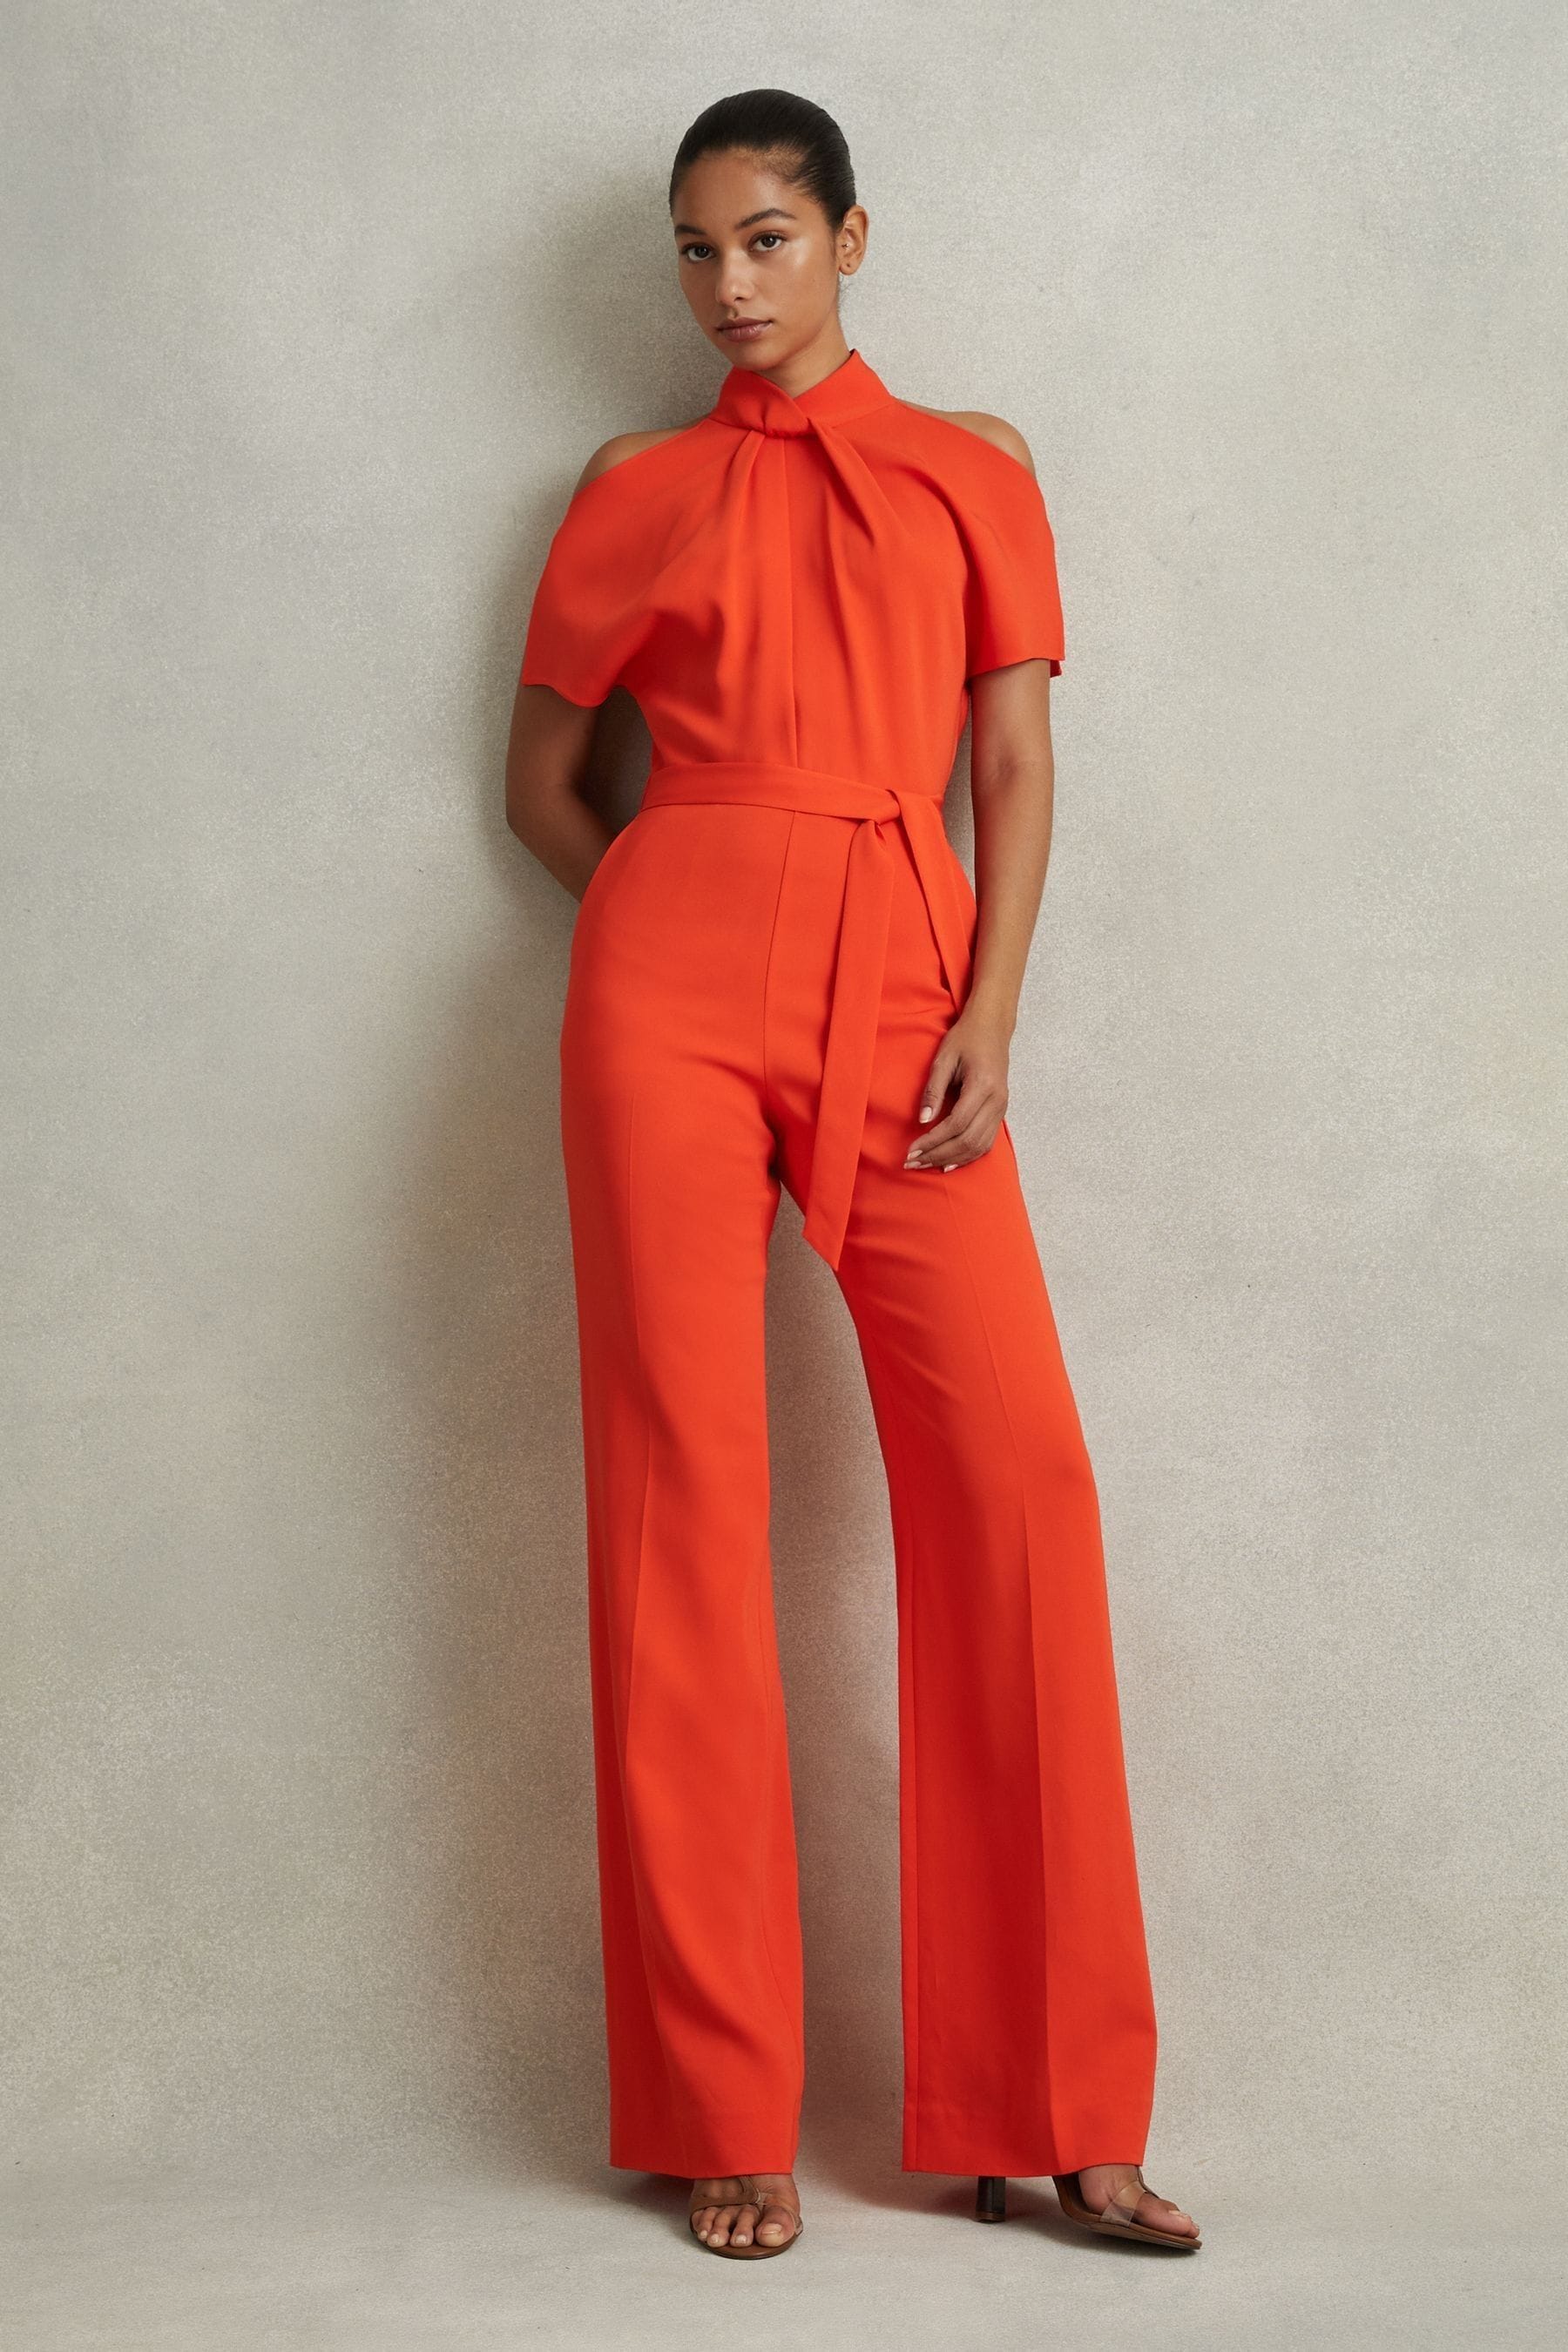 Reiss Amari - Orange Split Sleeve Twist Neck Jumpsuit, Us 0